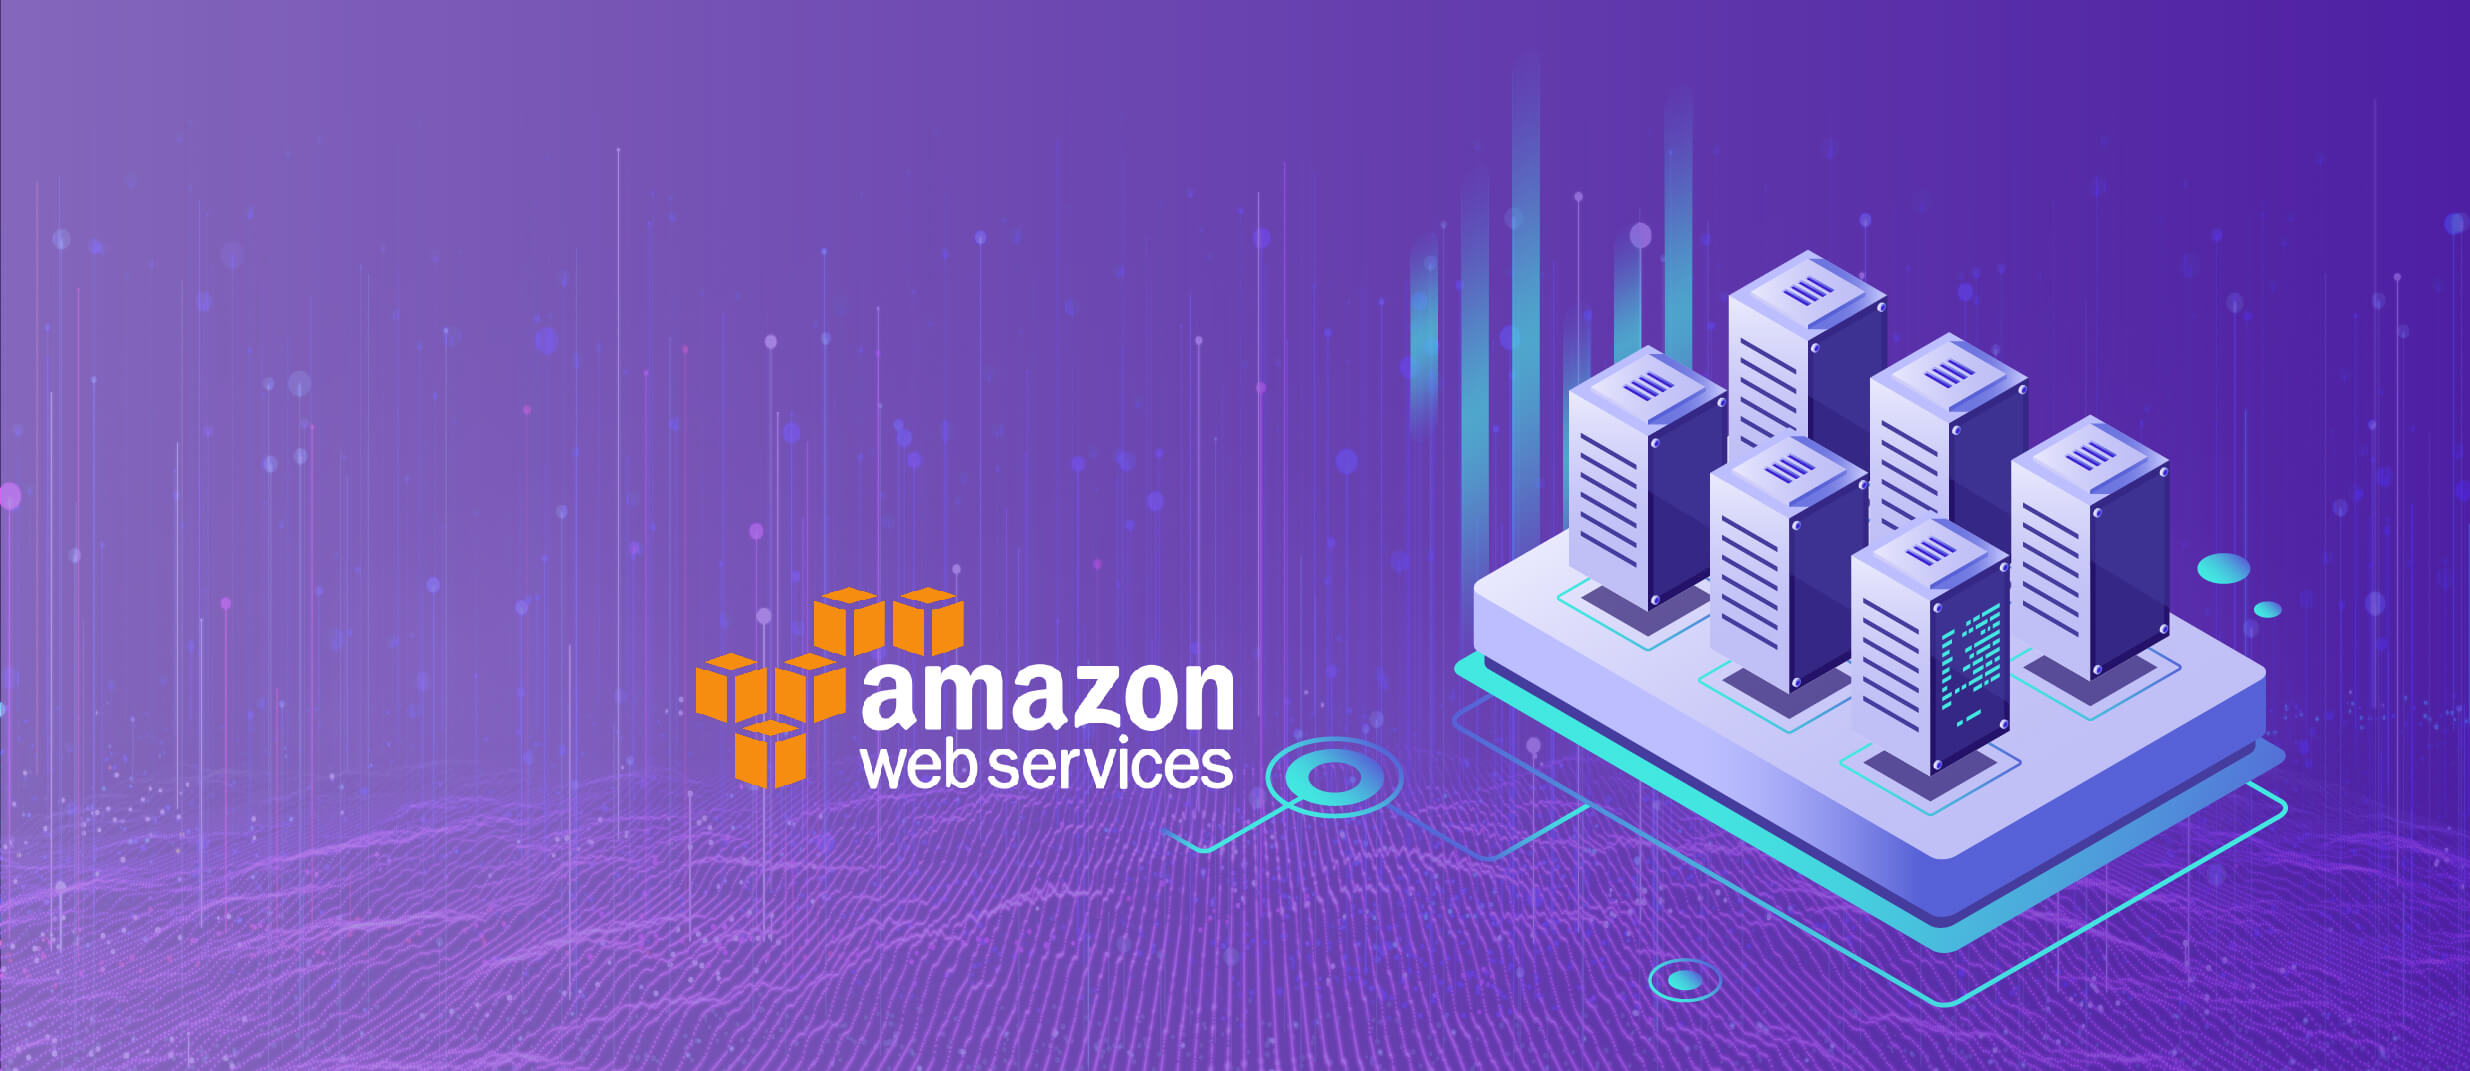 BigData on Amazon Web Services (AWS)